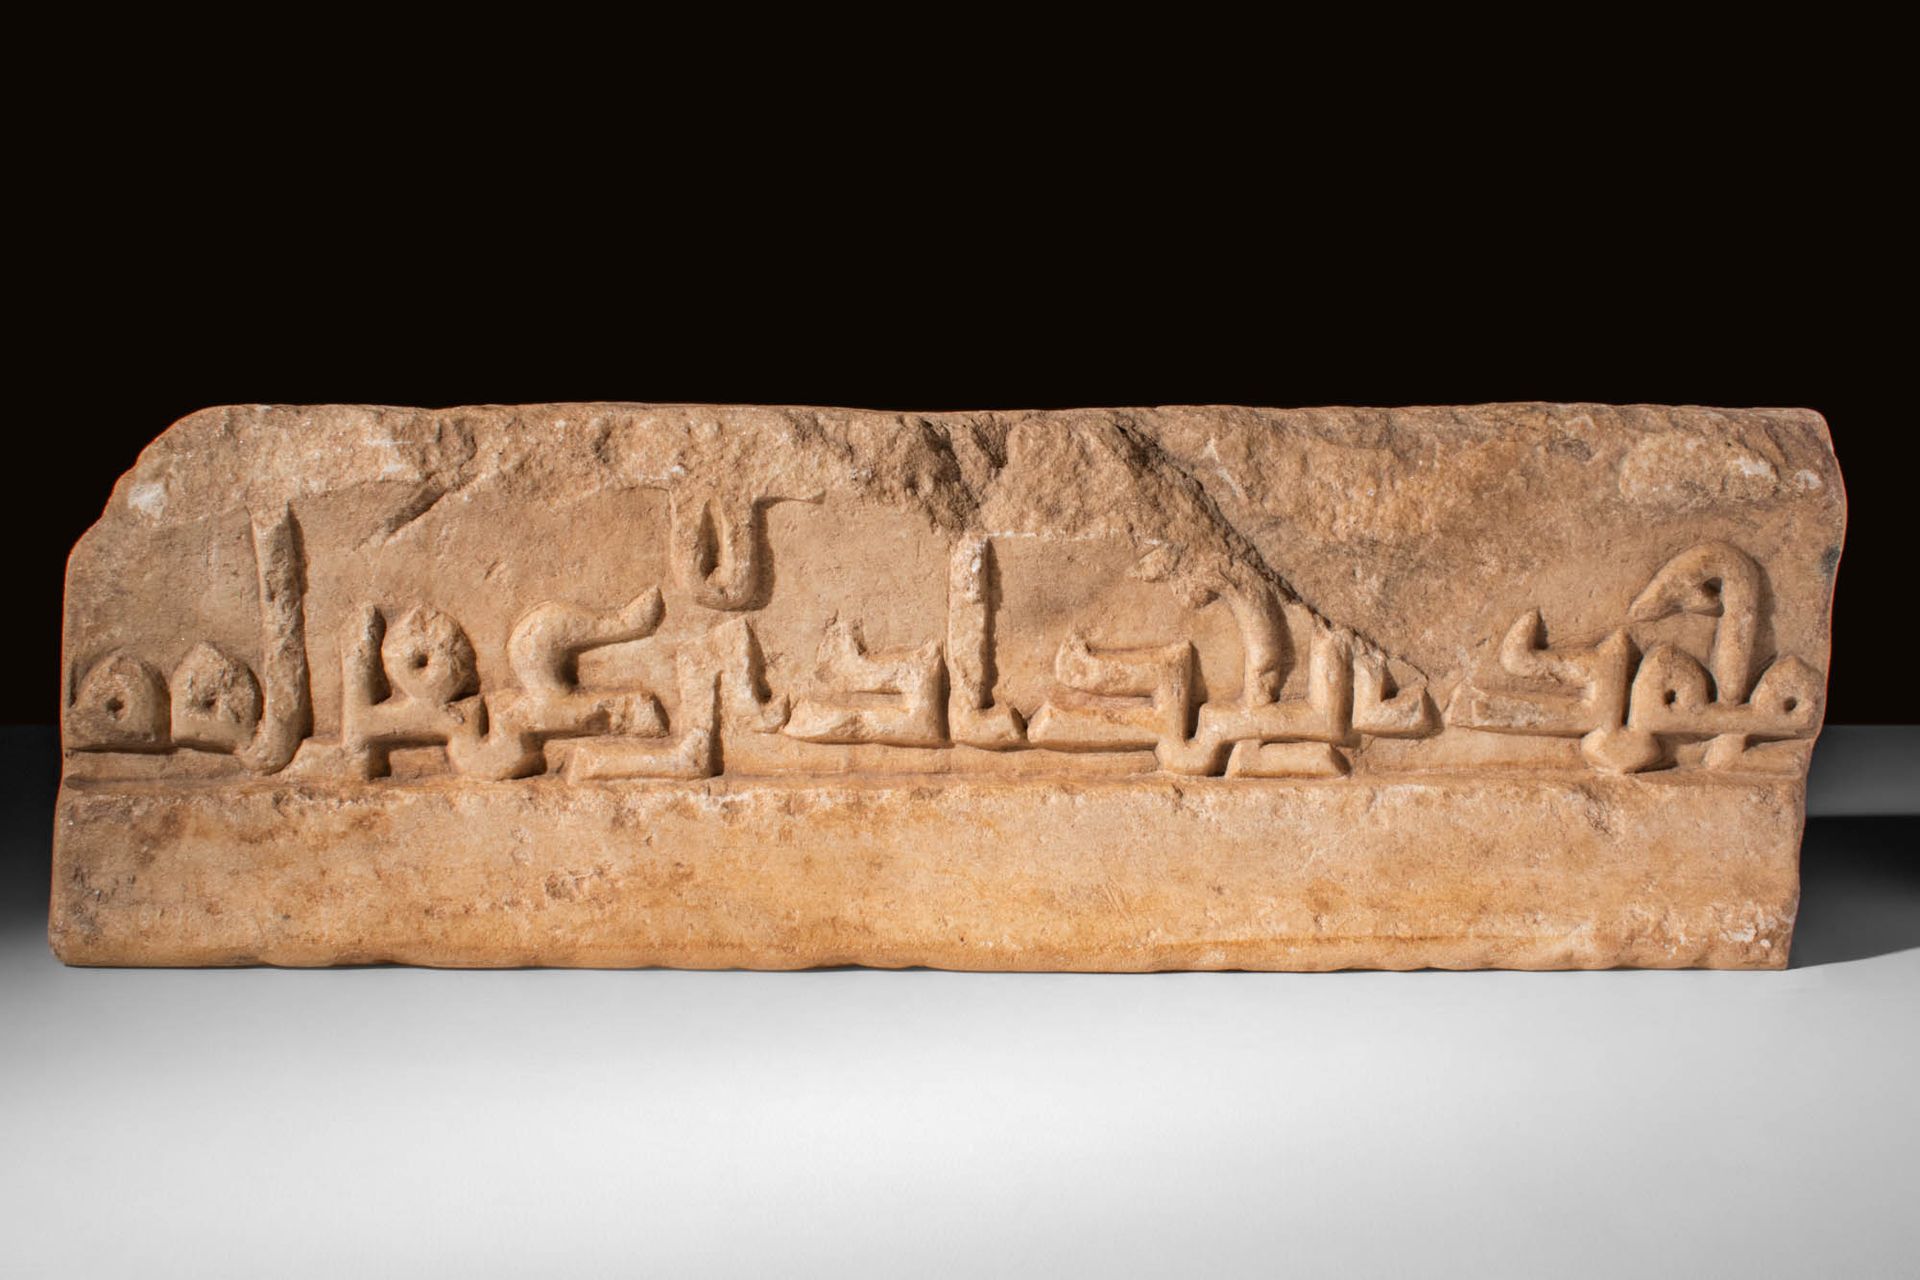 MEDIEVAL SELJUK ARCHITECTURAL INSCRIPTION Ca. AD 1100 - 1300.
Enorme inscripción&hellip;